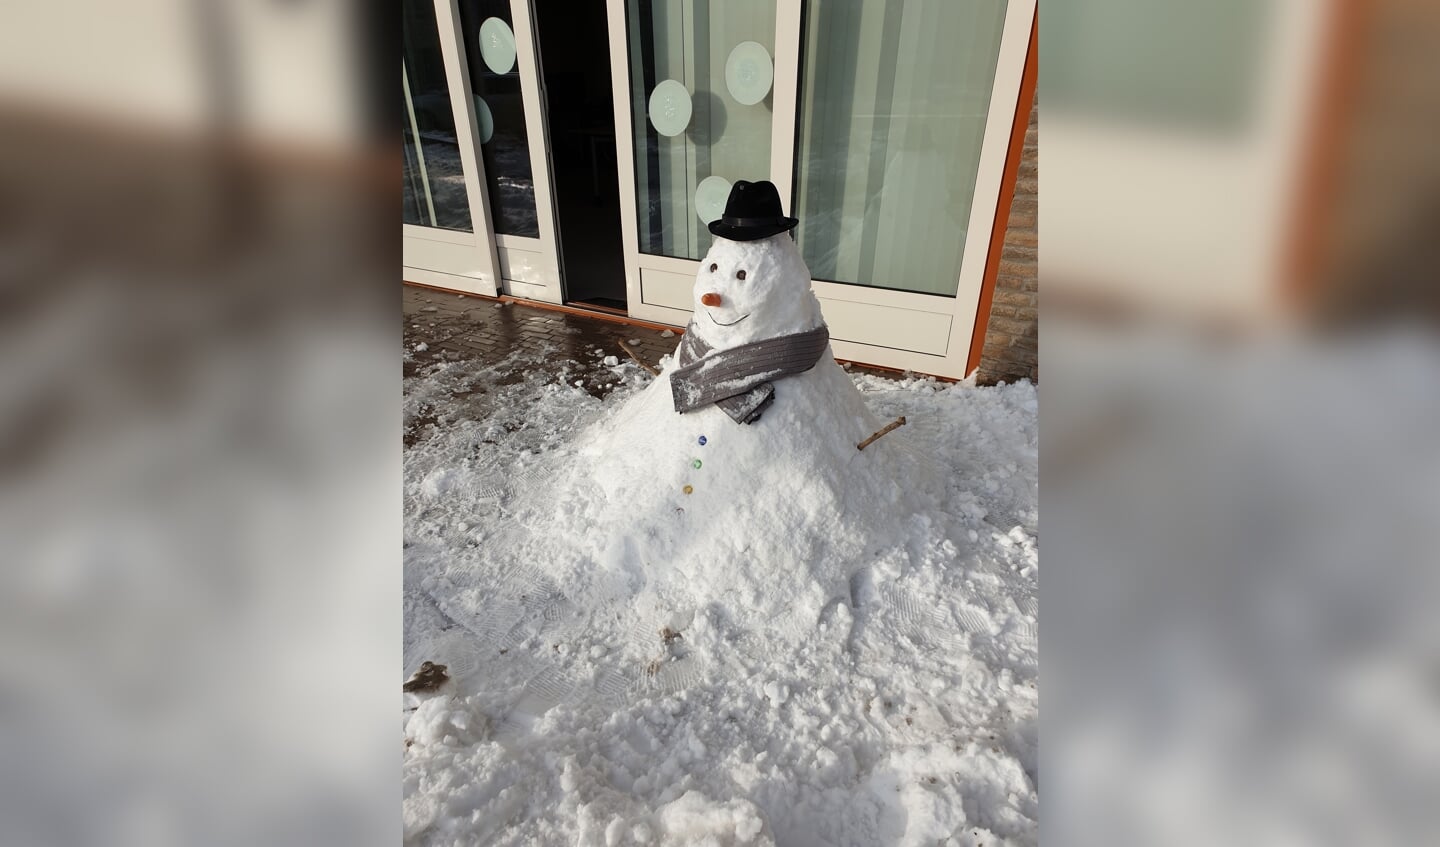 Ramona Versteege:  "Deze sneeuwpop is gemaakt op dinsdag 9 februari door mij, samen met collega's en cliënten van locatie Labyrinth van het Zeehos - Het Raamwerk."